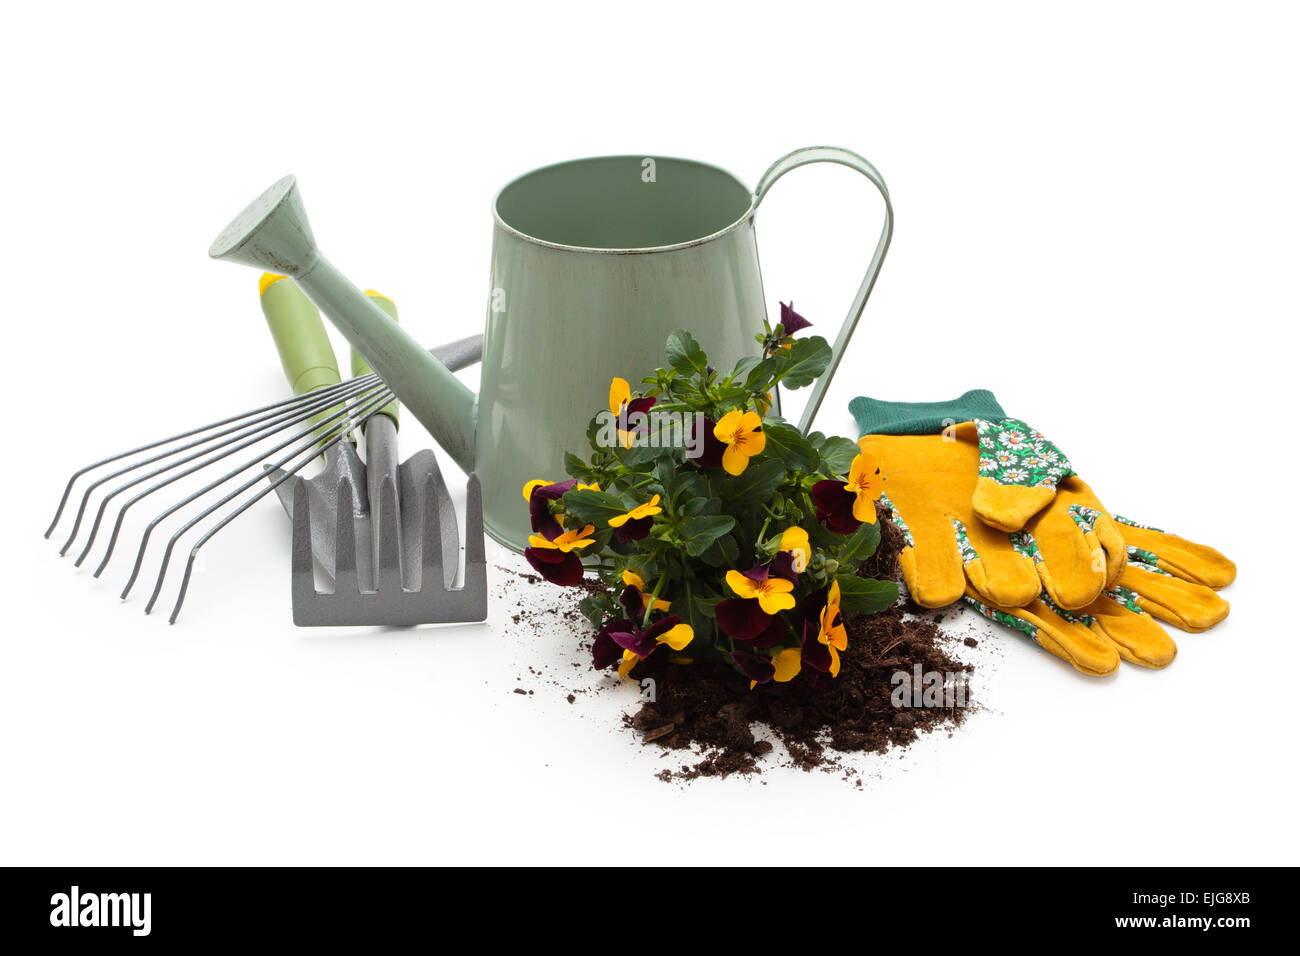 Arrosoir, fleurs, gants de protection et d'équipement de jardinage. Isolé sur fond blanc. Banque D'Images